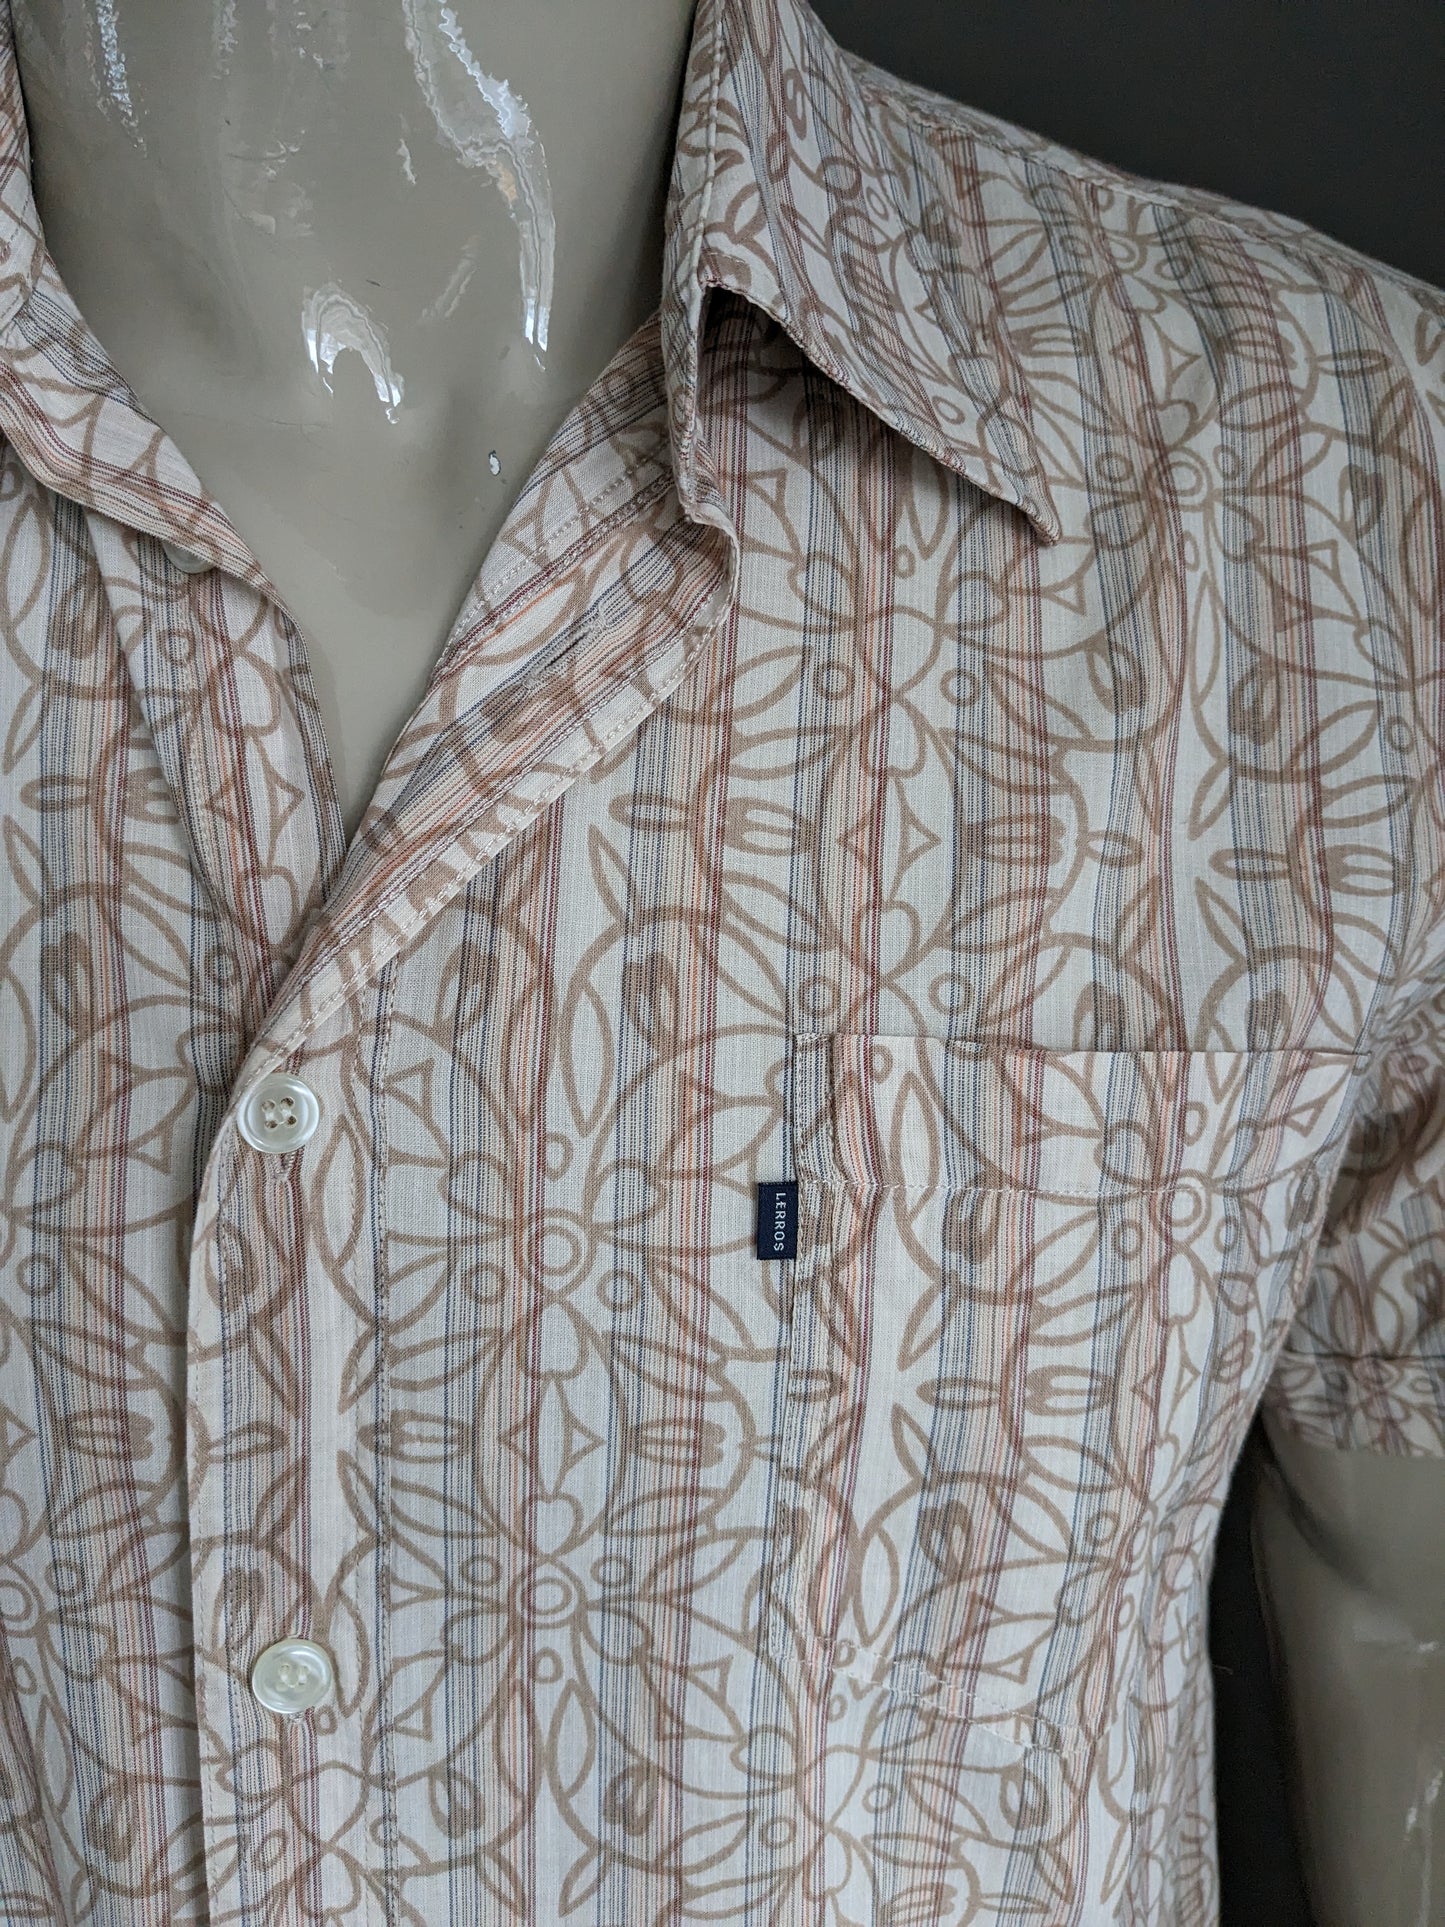 Lerros Shirt Sleeve. Imprimé floral brun clair / rayé. Taille xl.